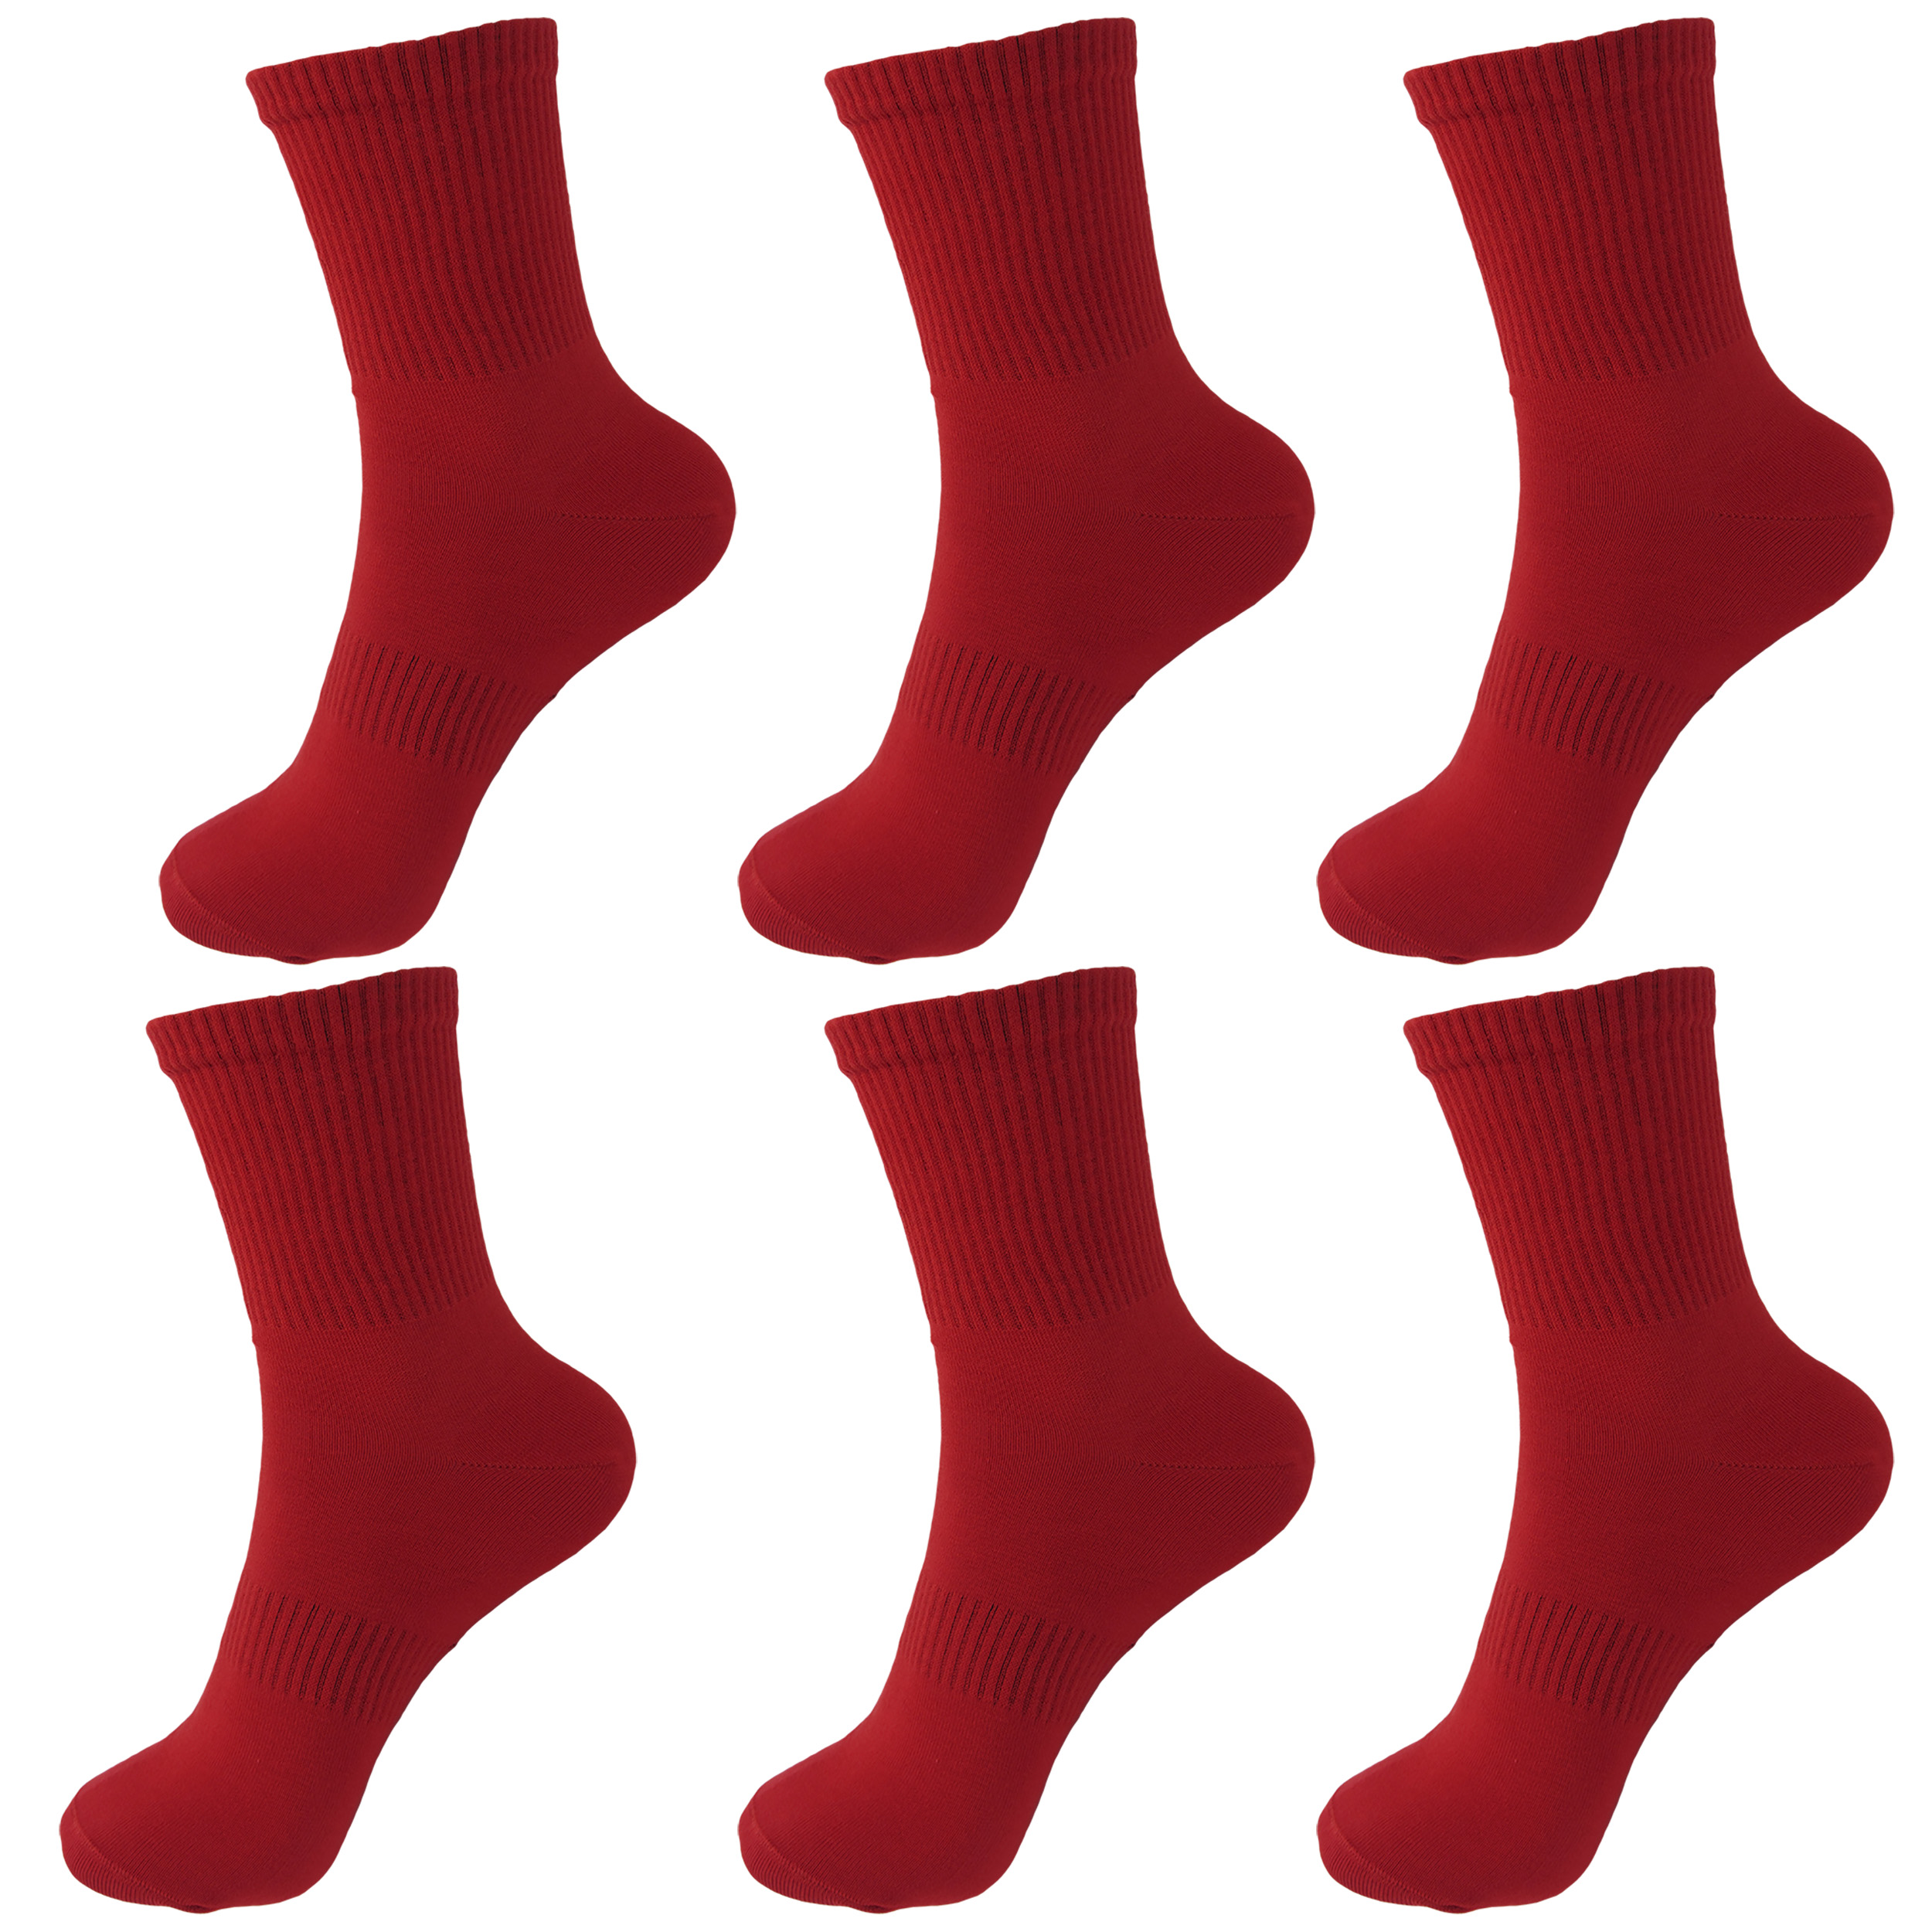 جوراب ورزشی مردانه ادیب مدل کش انگلیسی کد MNSPT رنگ قرمز بسته 6 عددی